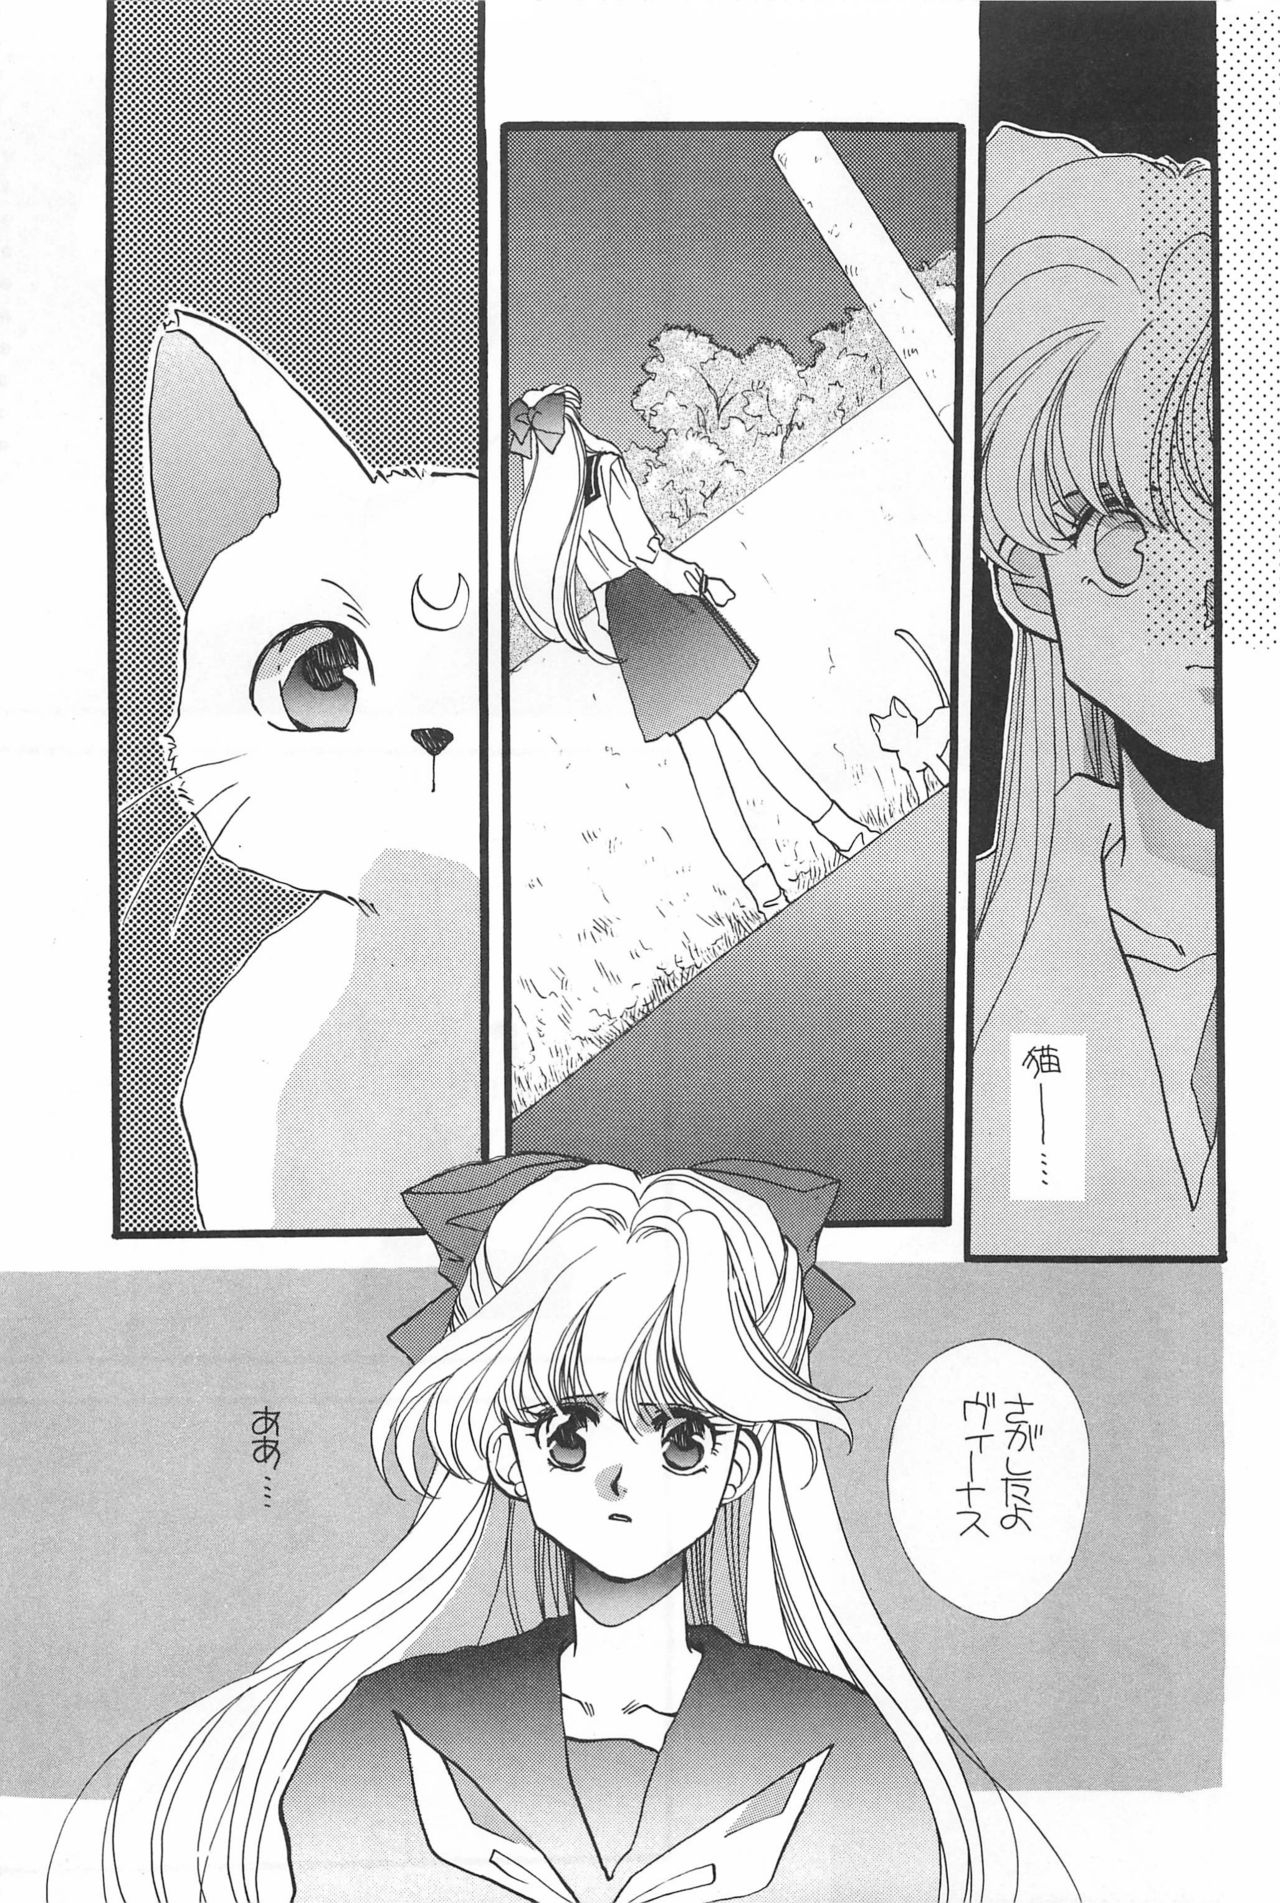 [Hello World (Muttri Moony)] Kaze no You ni Yume no You ni - Sailor Moon Collection (Sailor Moon) 76